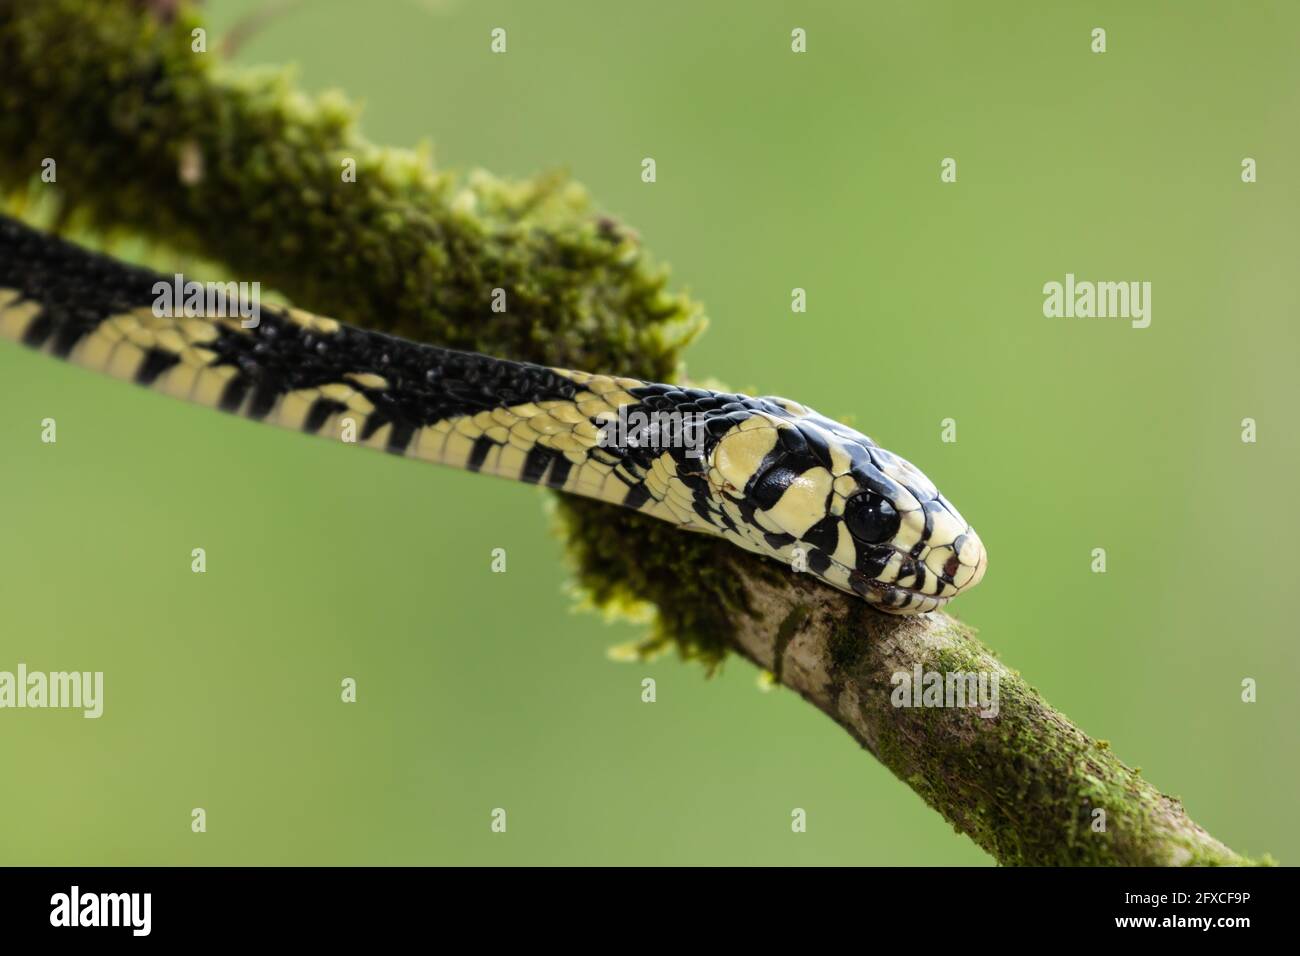 La serpiente de rata del tigre, Spilotes pullatus, es una serpiente no venenosa que se encuentra desde México hasta el centro de Sudamérica. Puede crecer hasta 14 pies de longitud. Foto de stock